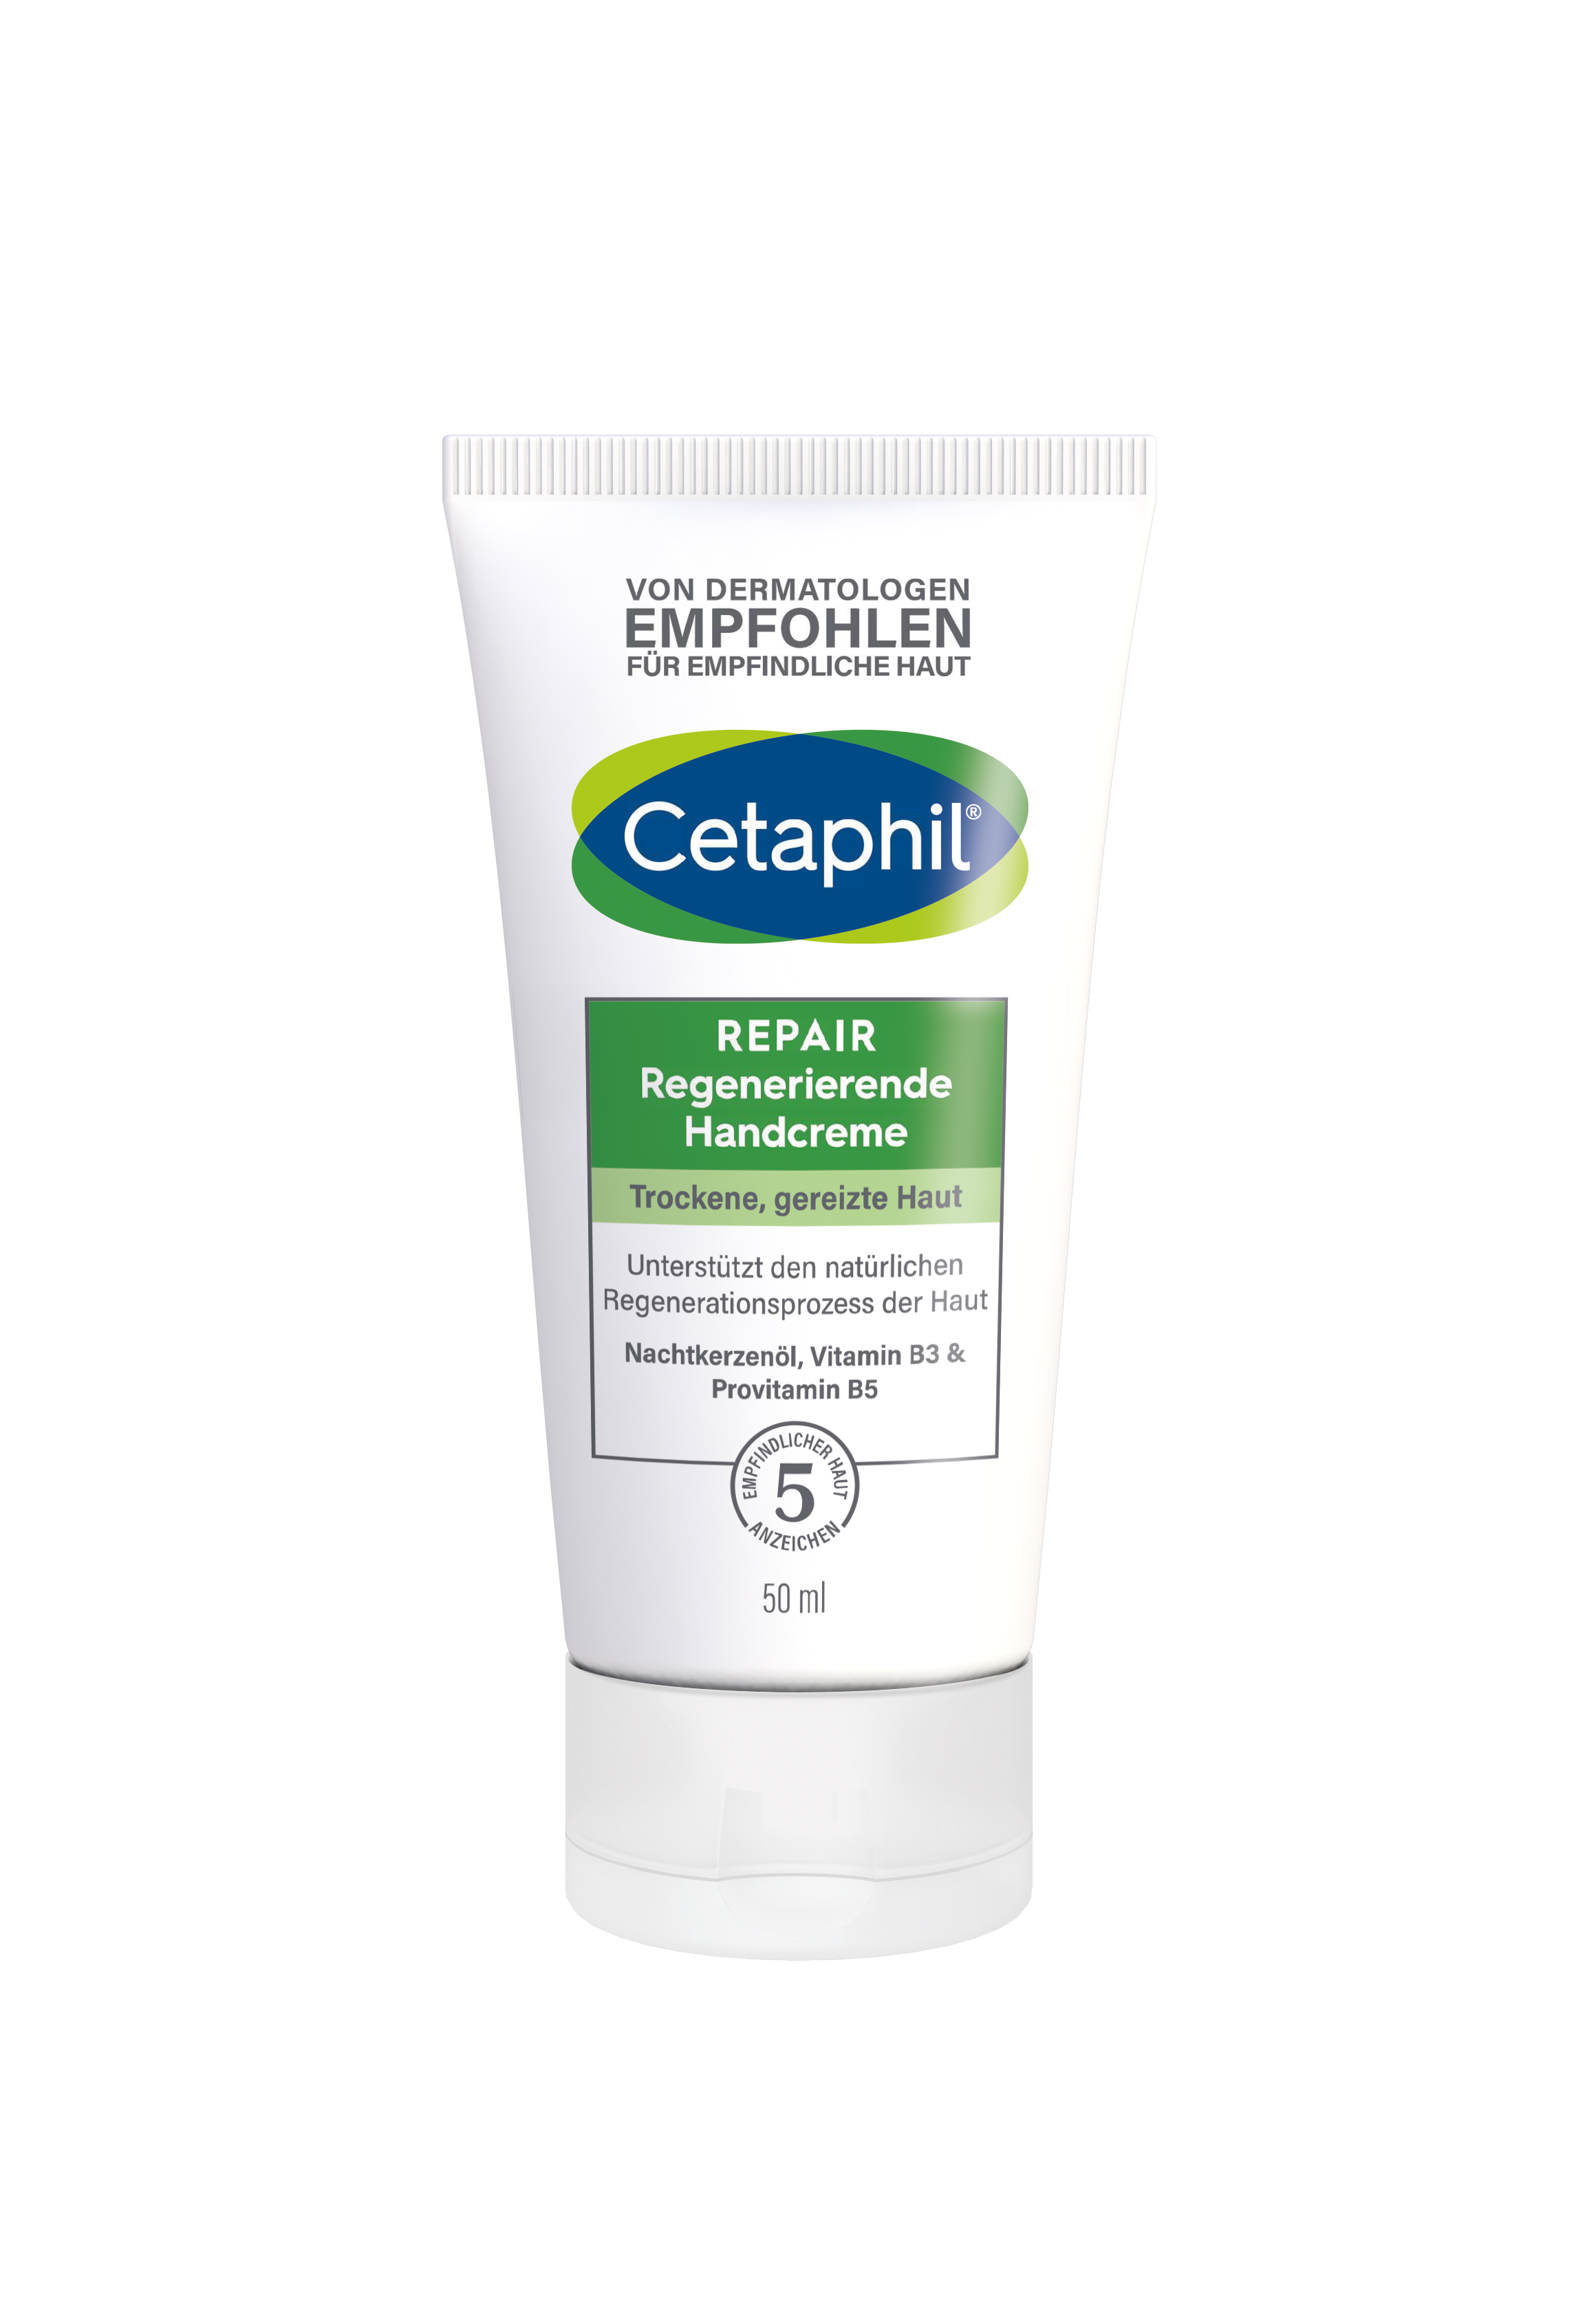 Cetaphil REPAIR Regenerierende Handcreme (50 ml)